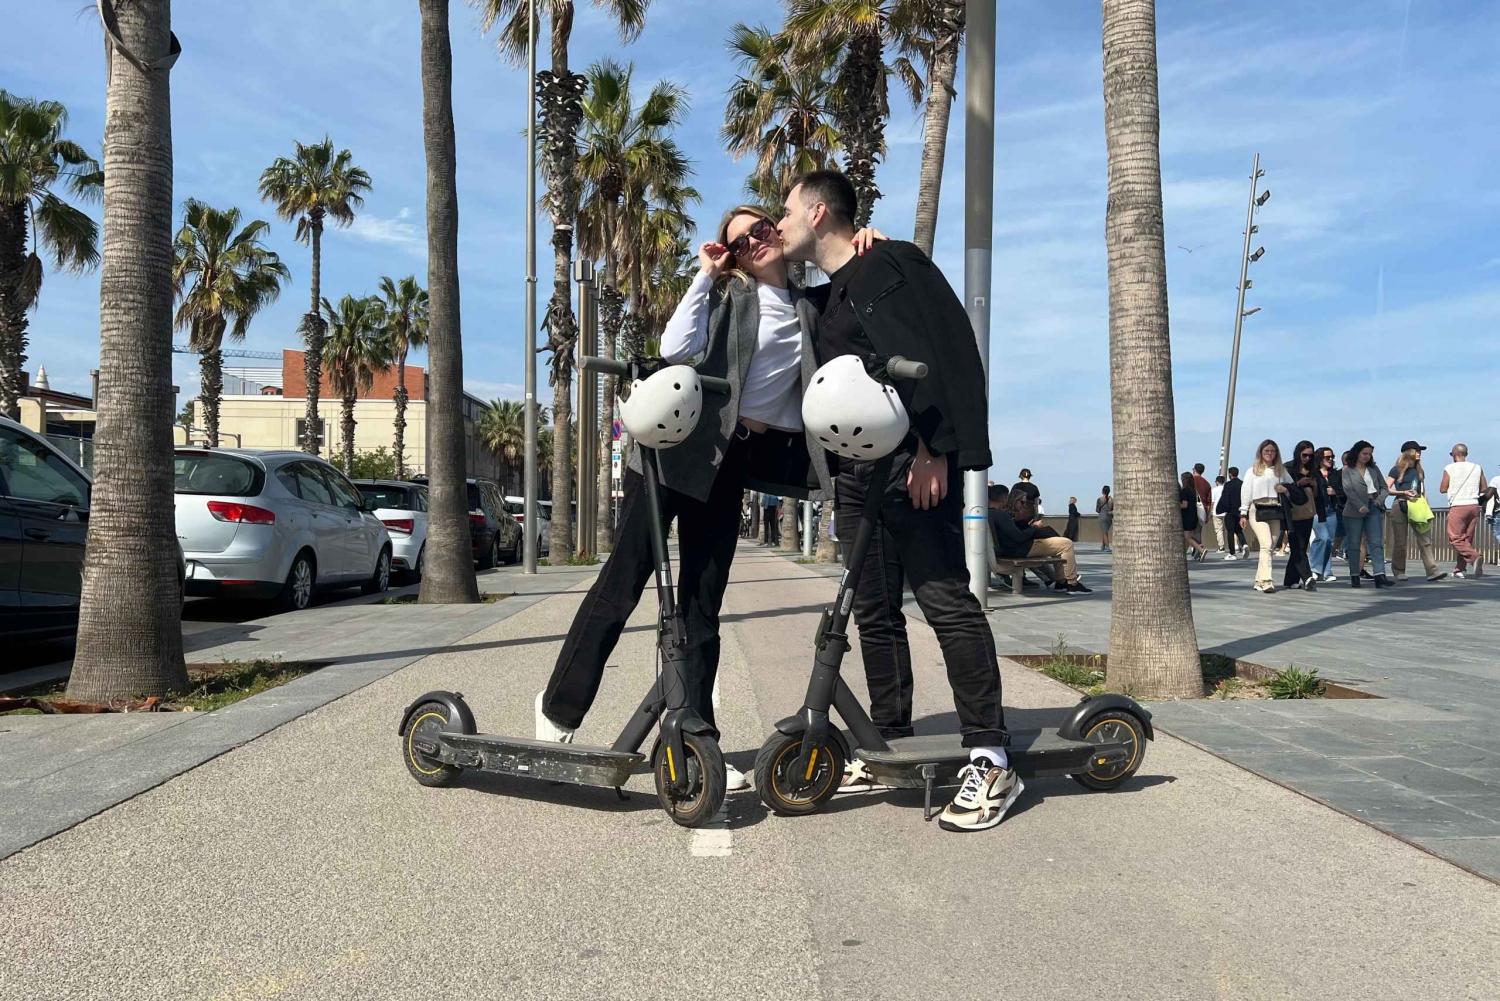 Utflykt med e-scooter i Barcelona